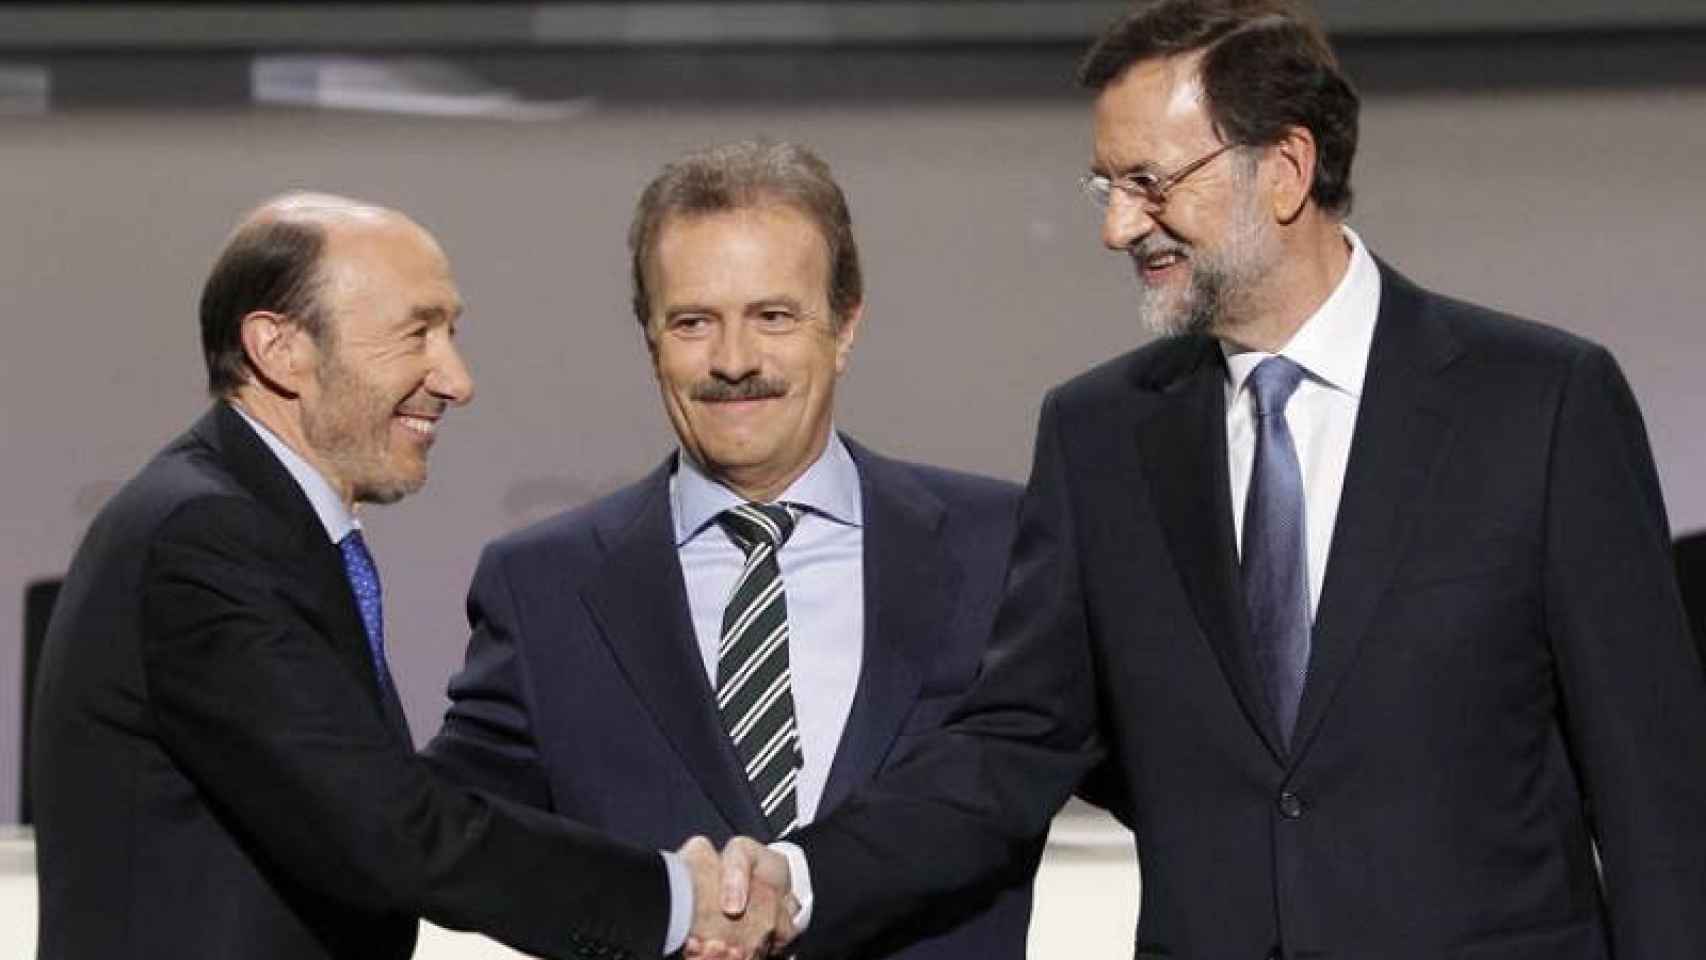 El último debate, con Rubalcaba y Rajoy y el moderador Campo Vidal.